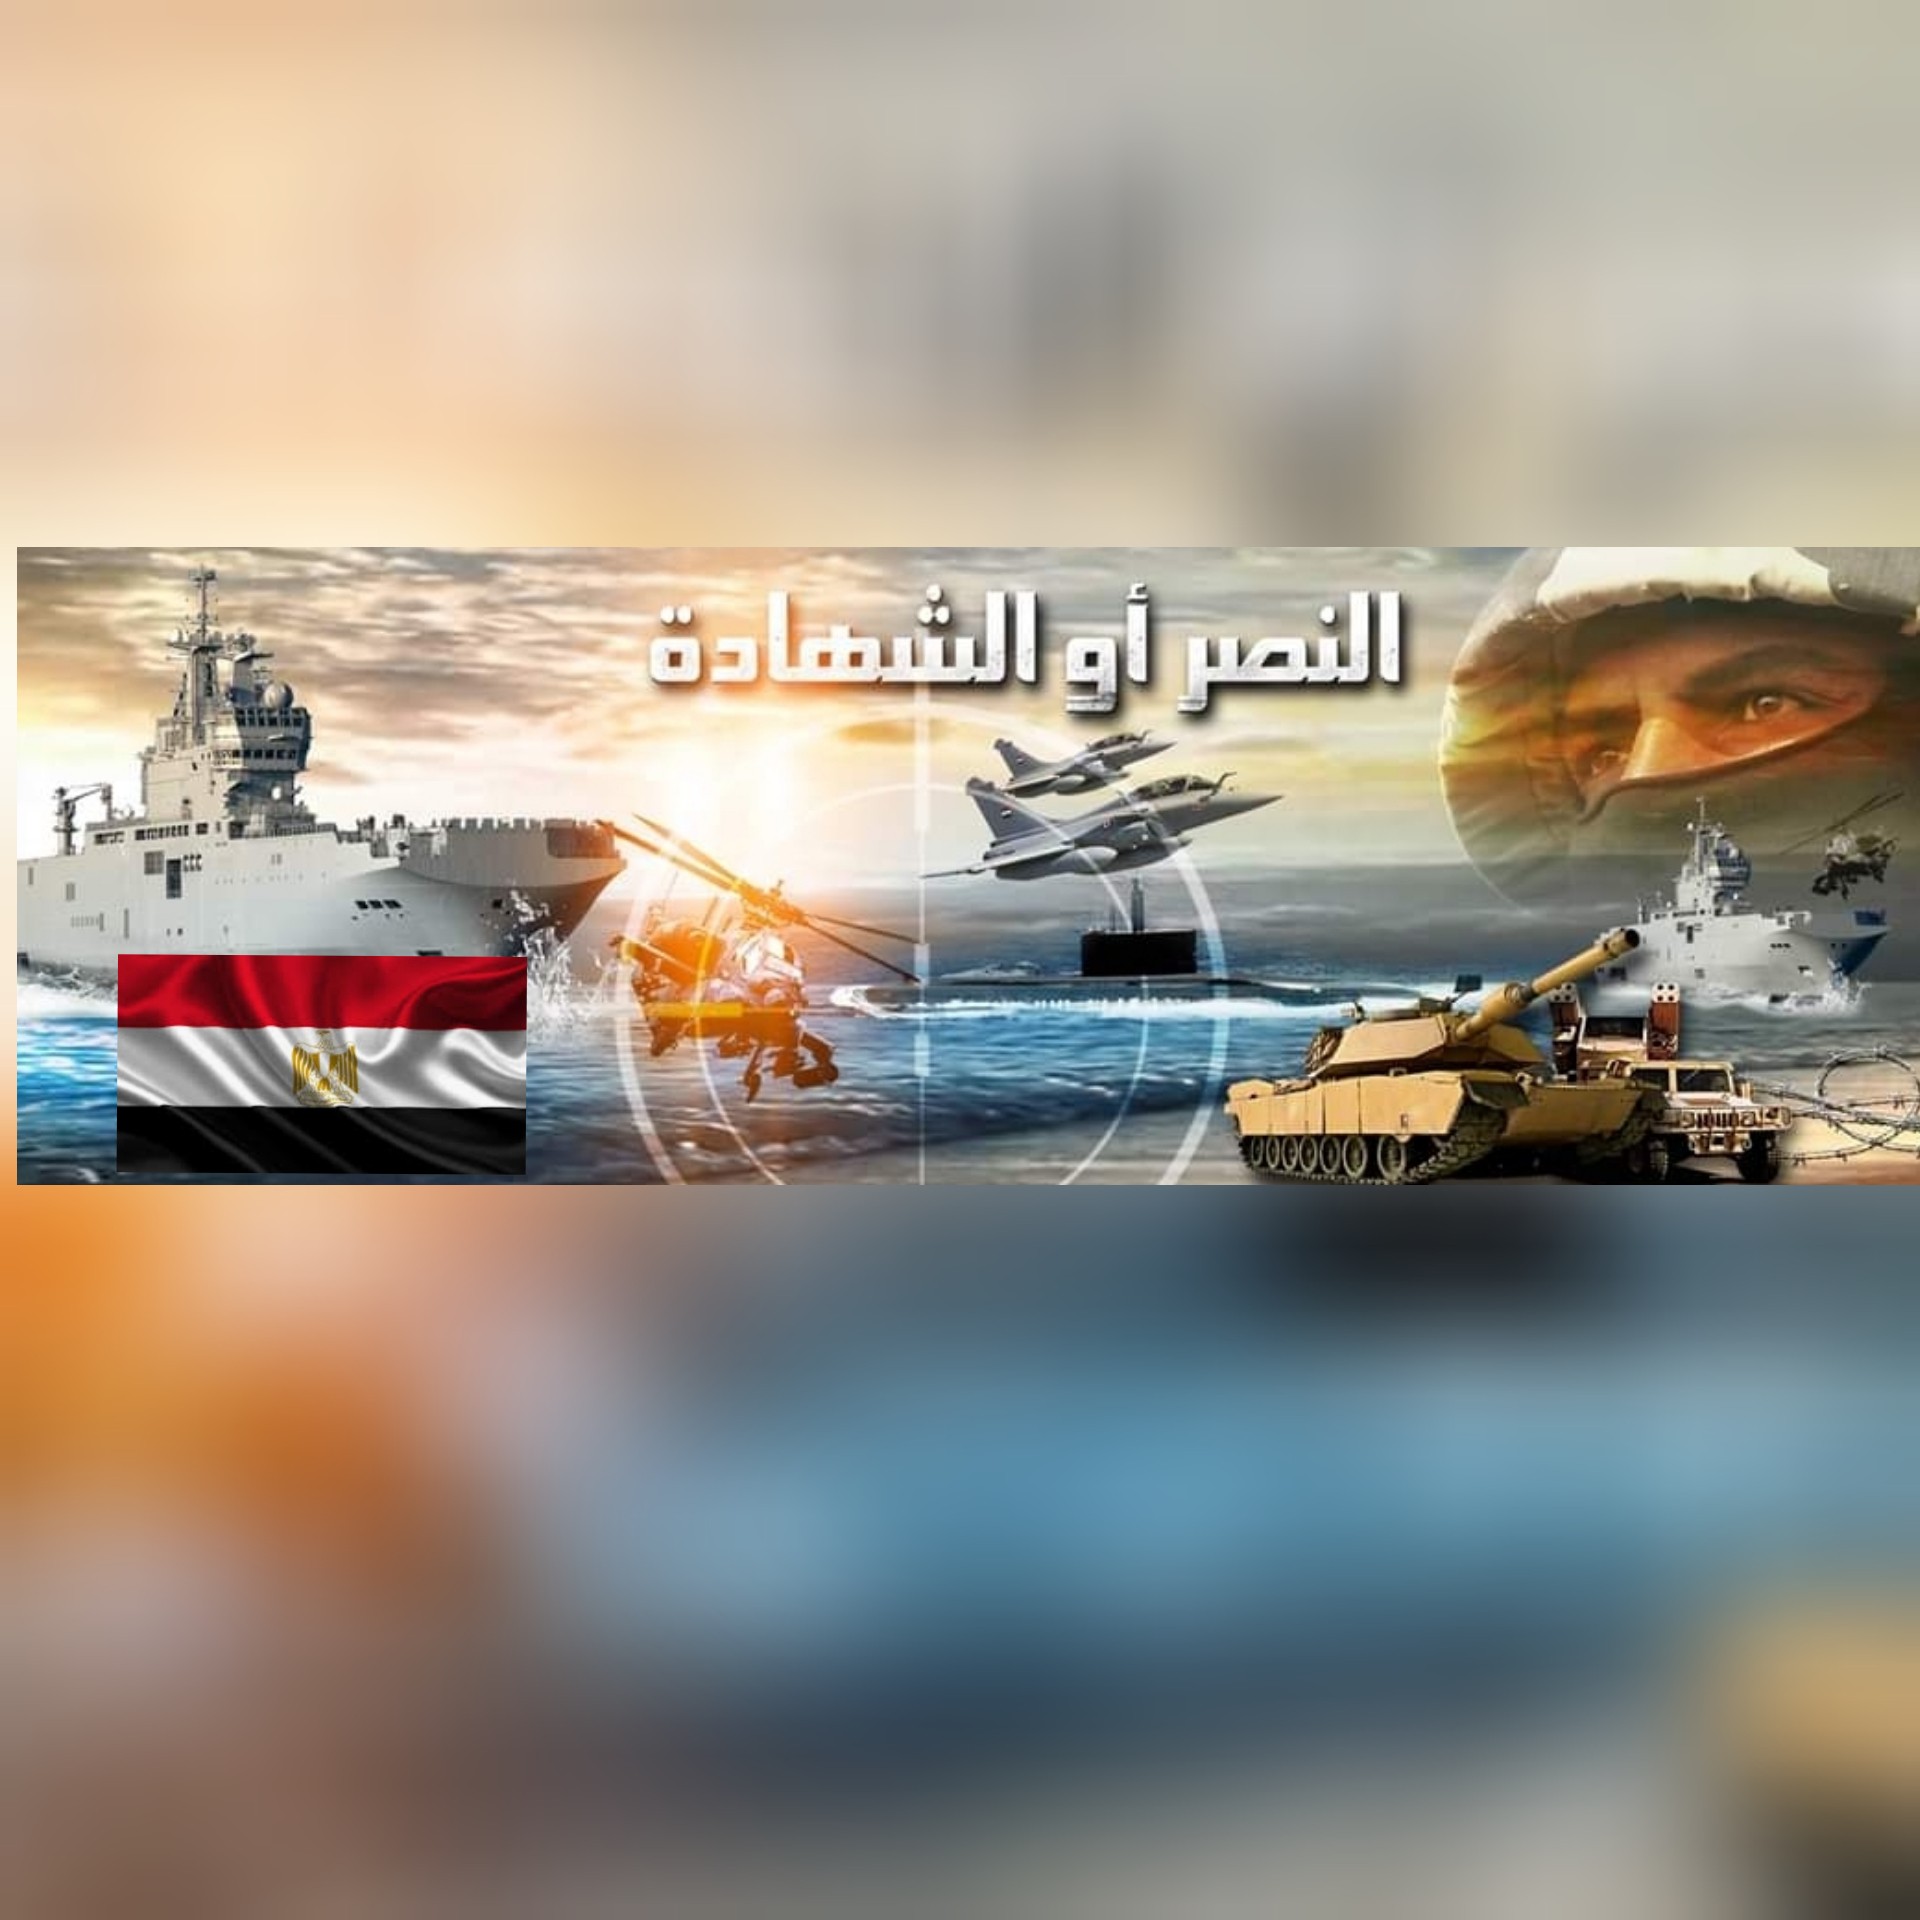 بالفيديو/عمليات نوعية للقضاء على الإرهاب وبيان للقيادة العامة للقوات المسلحة المصرية